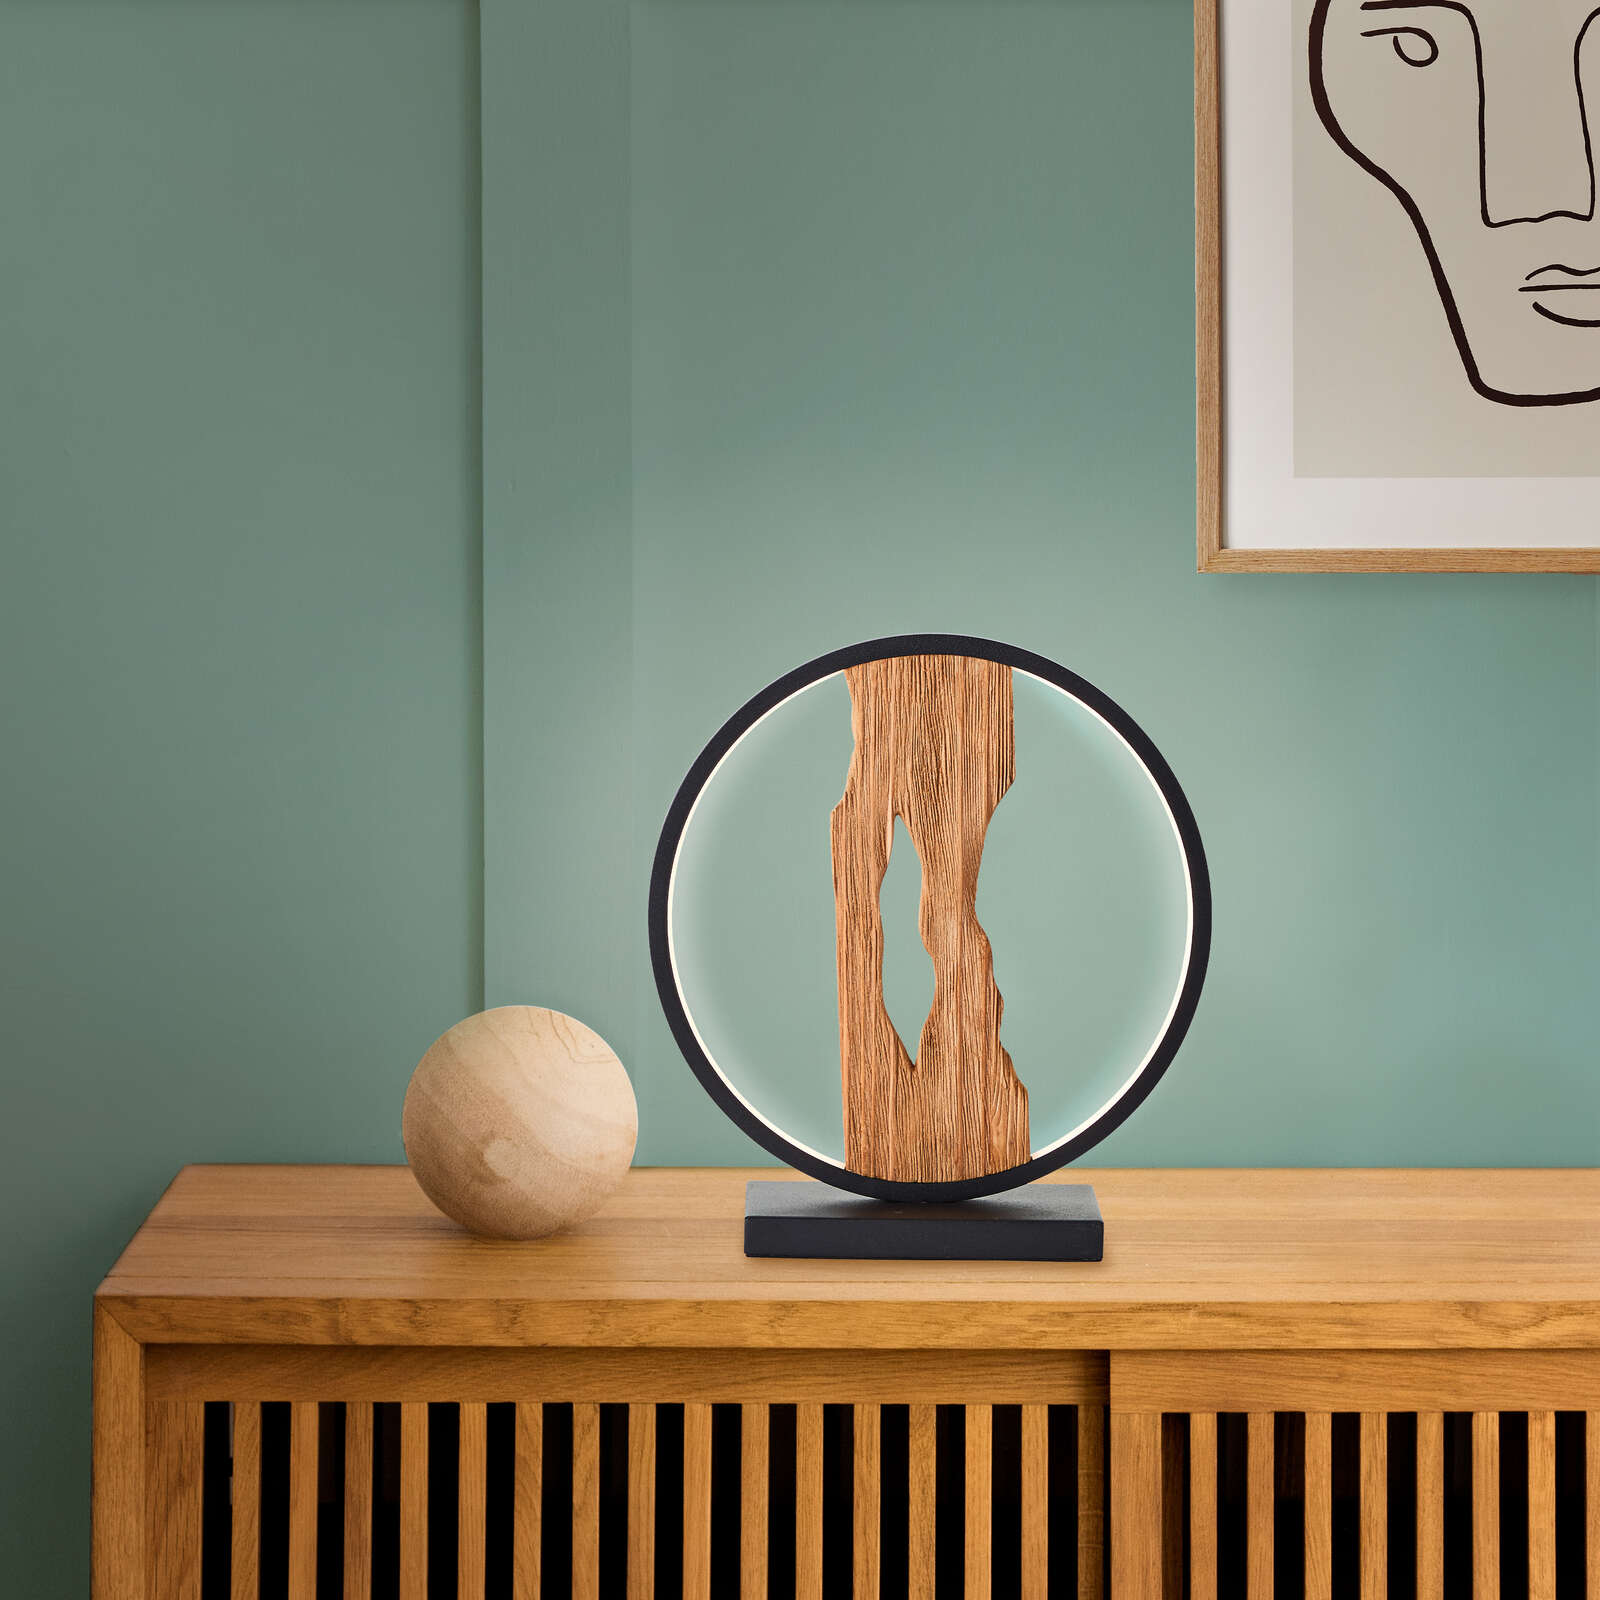             Lámpara de mesa de madera - Elea 1 - Marrón
        